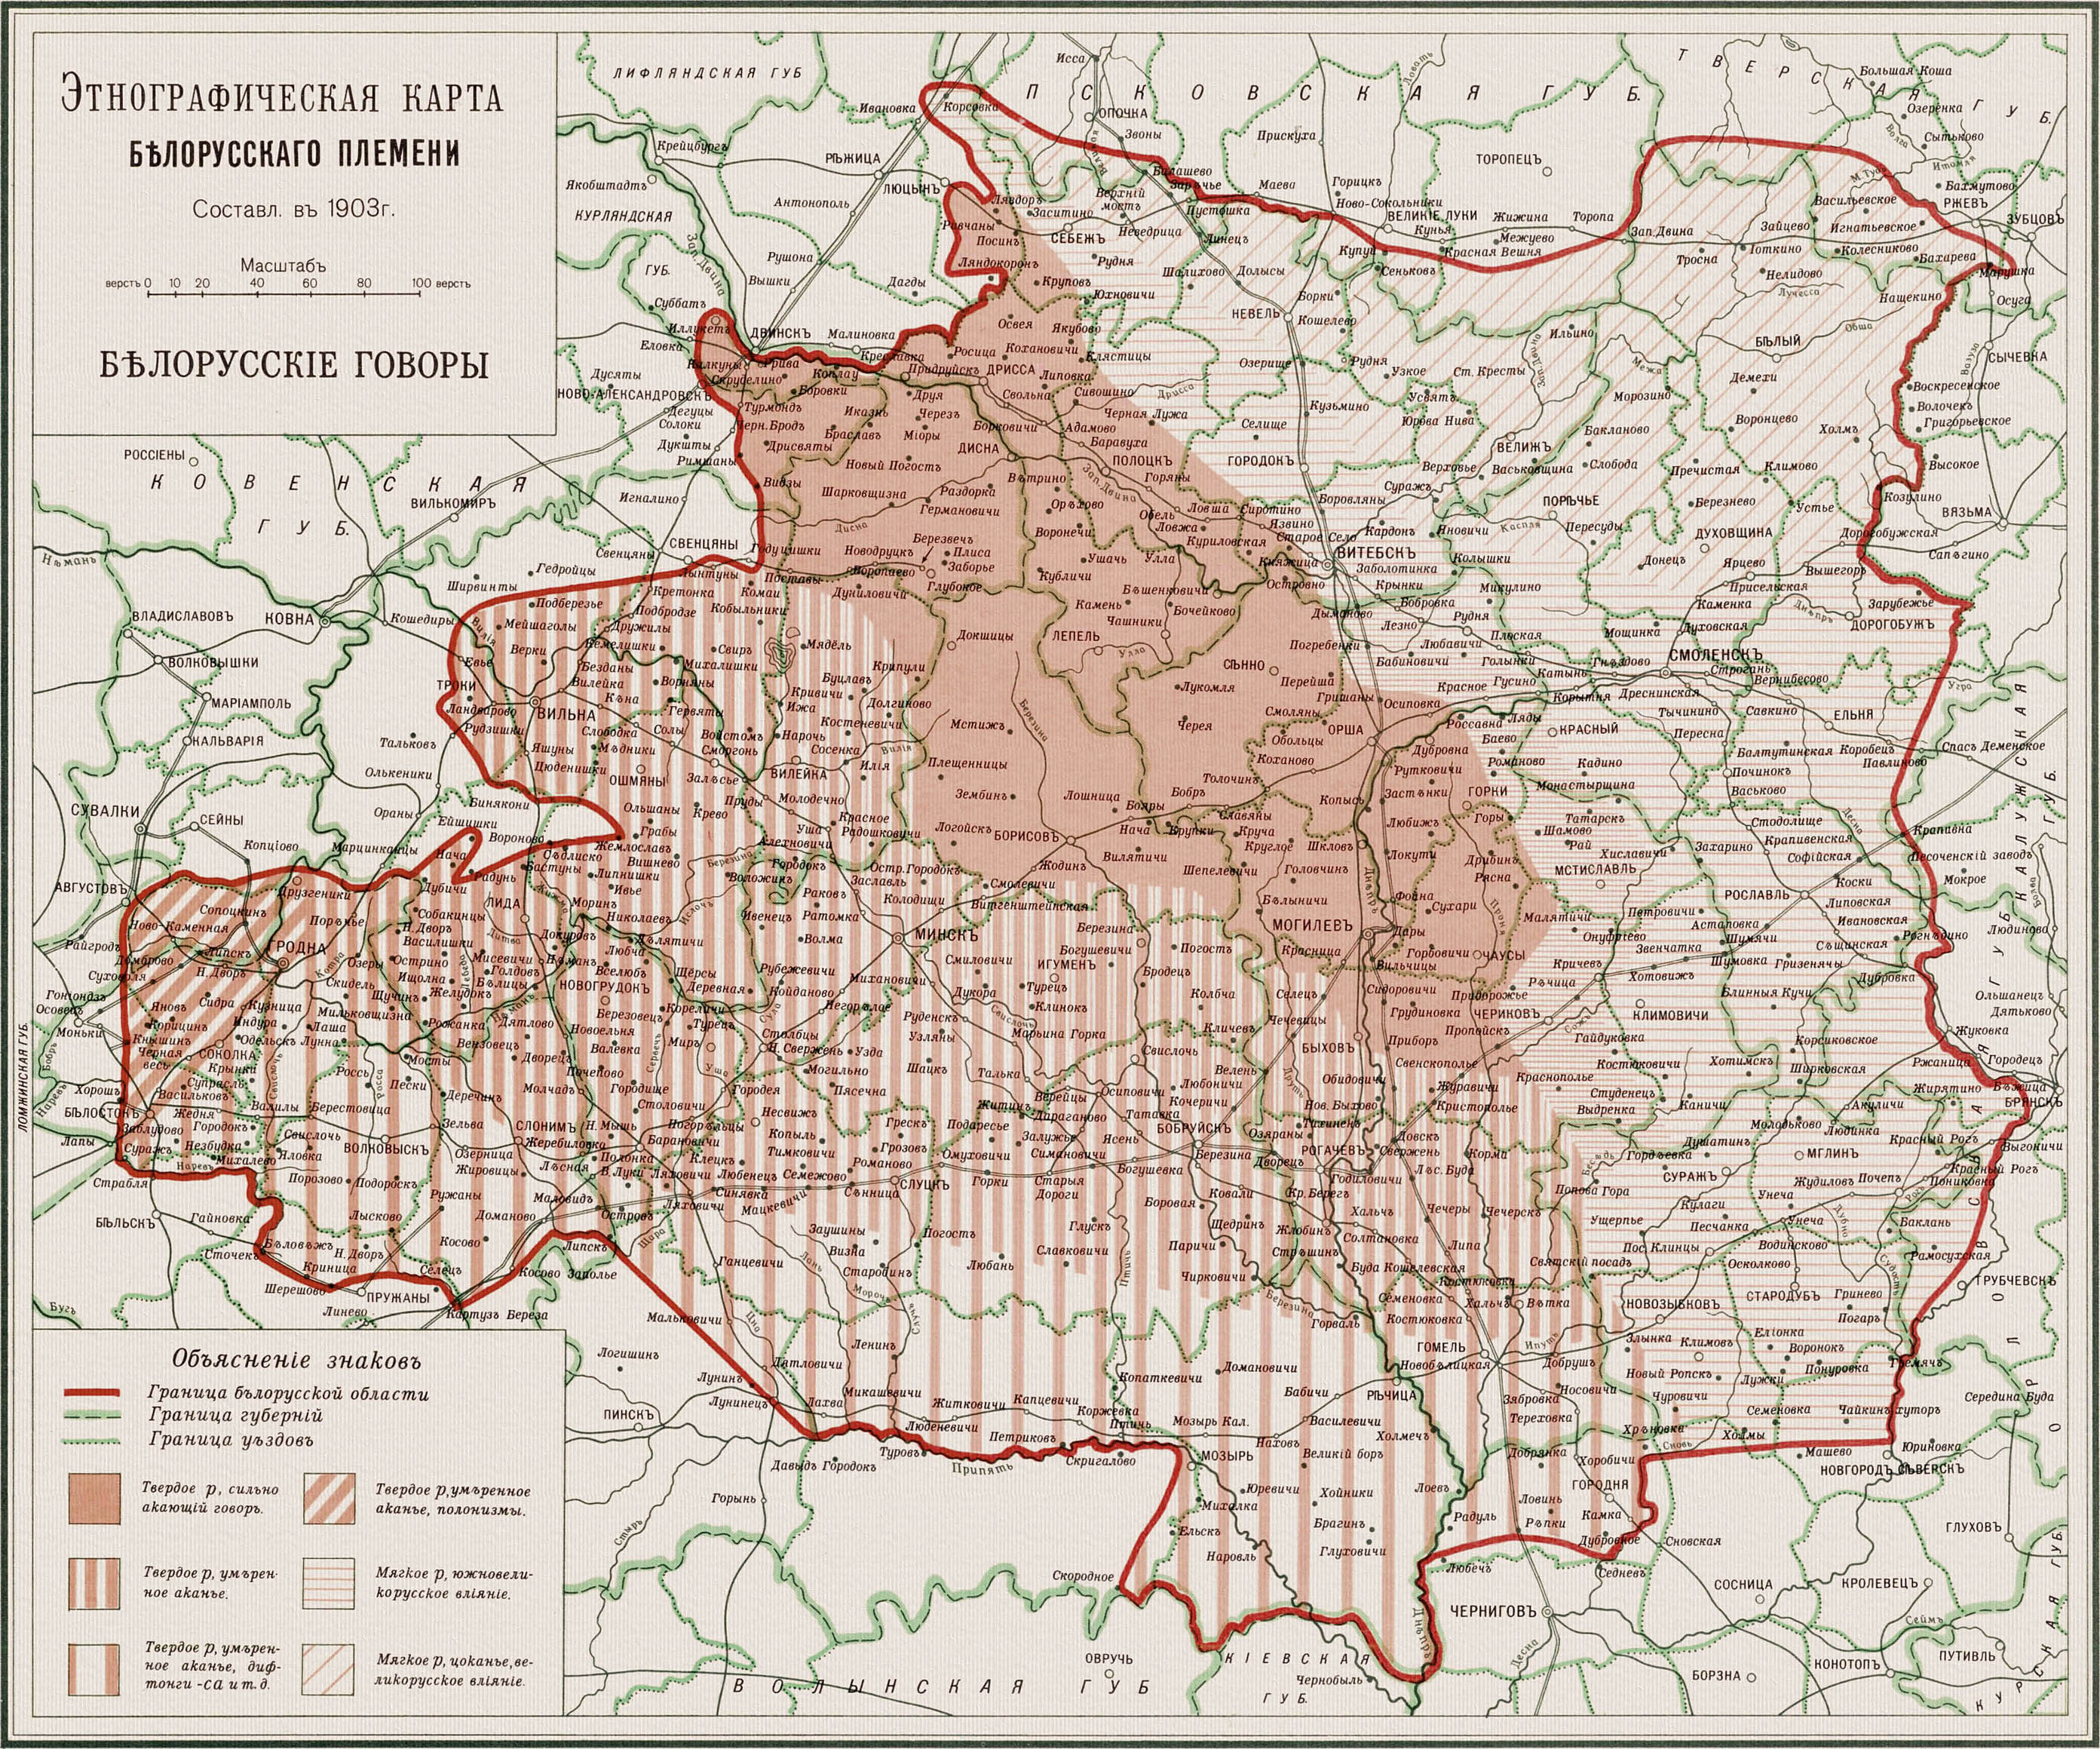 Яўхім Карскі, Этнографическая карта. 1903 год.